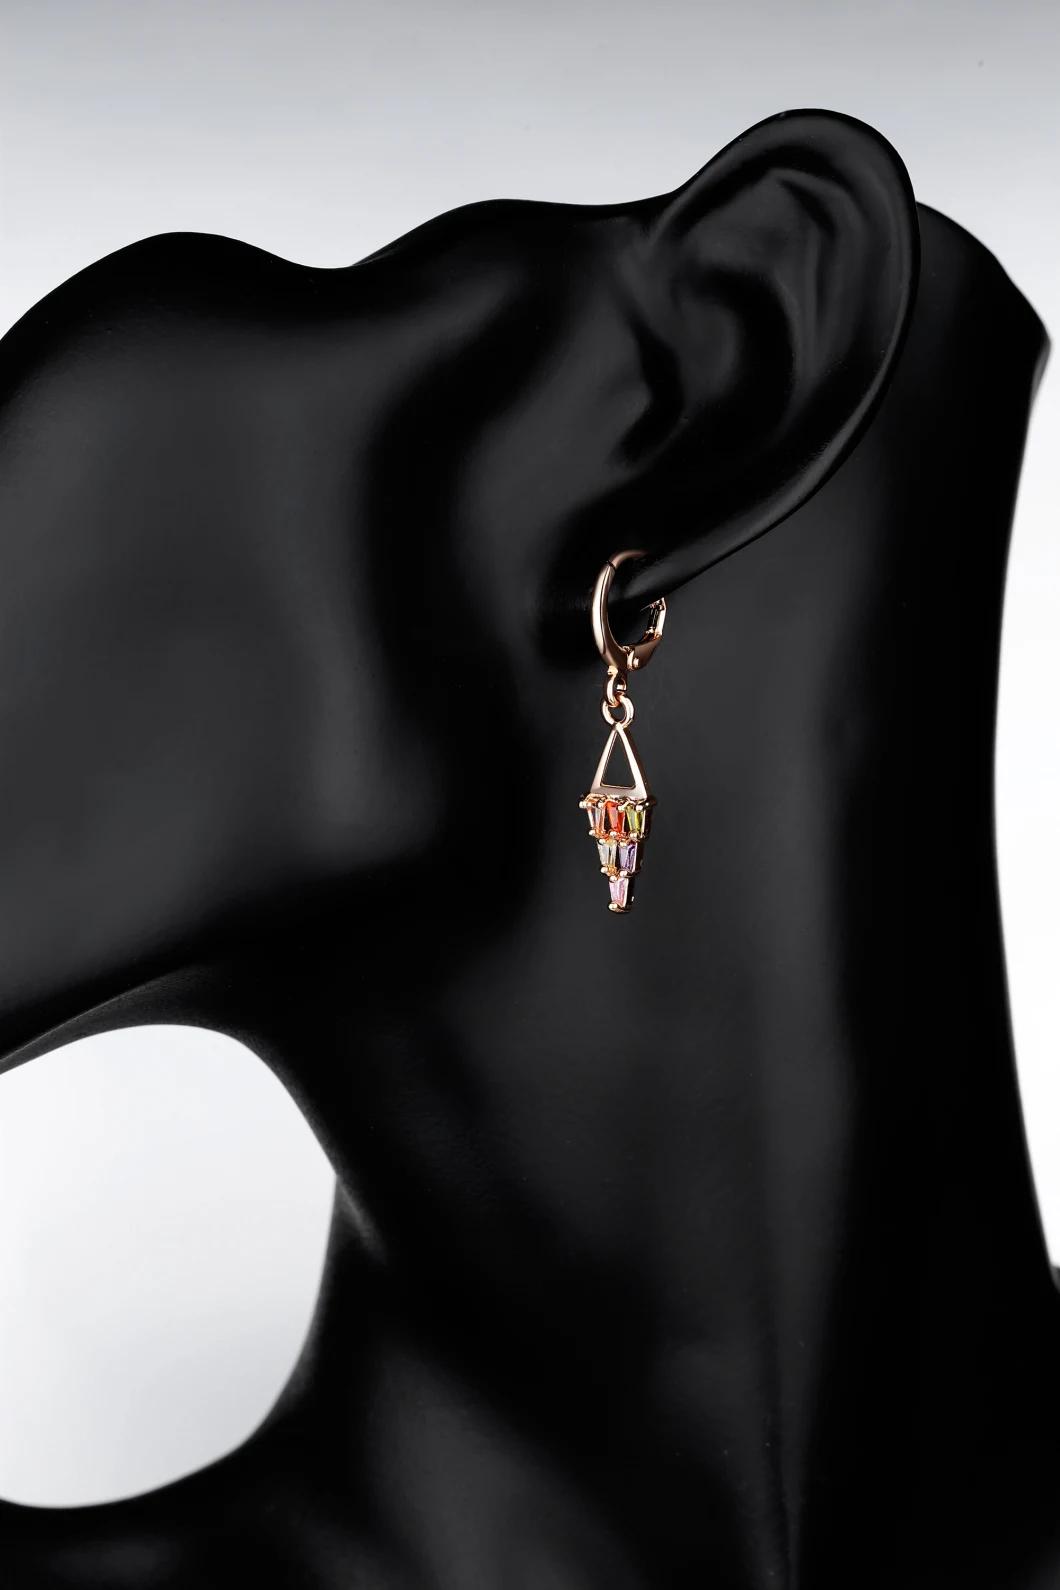 Fashion Drop Earrings Metal/Pearl/Crystal Earrings for Women Jewelry